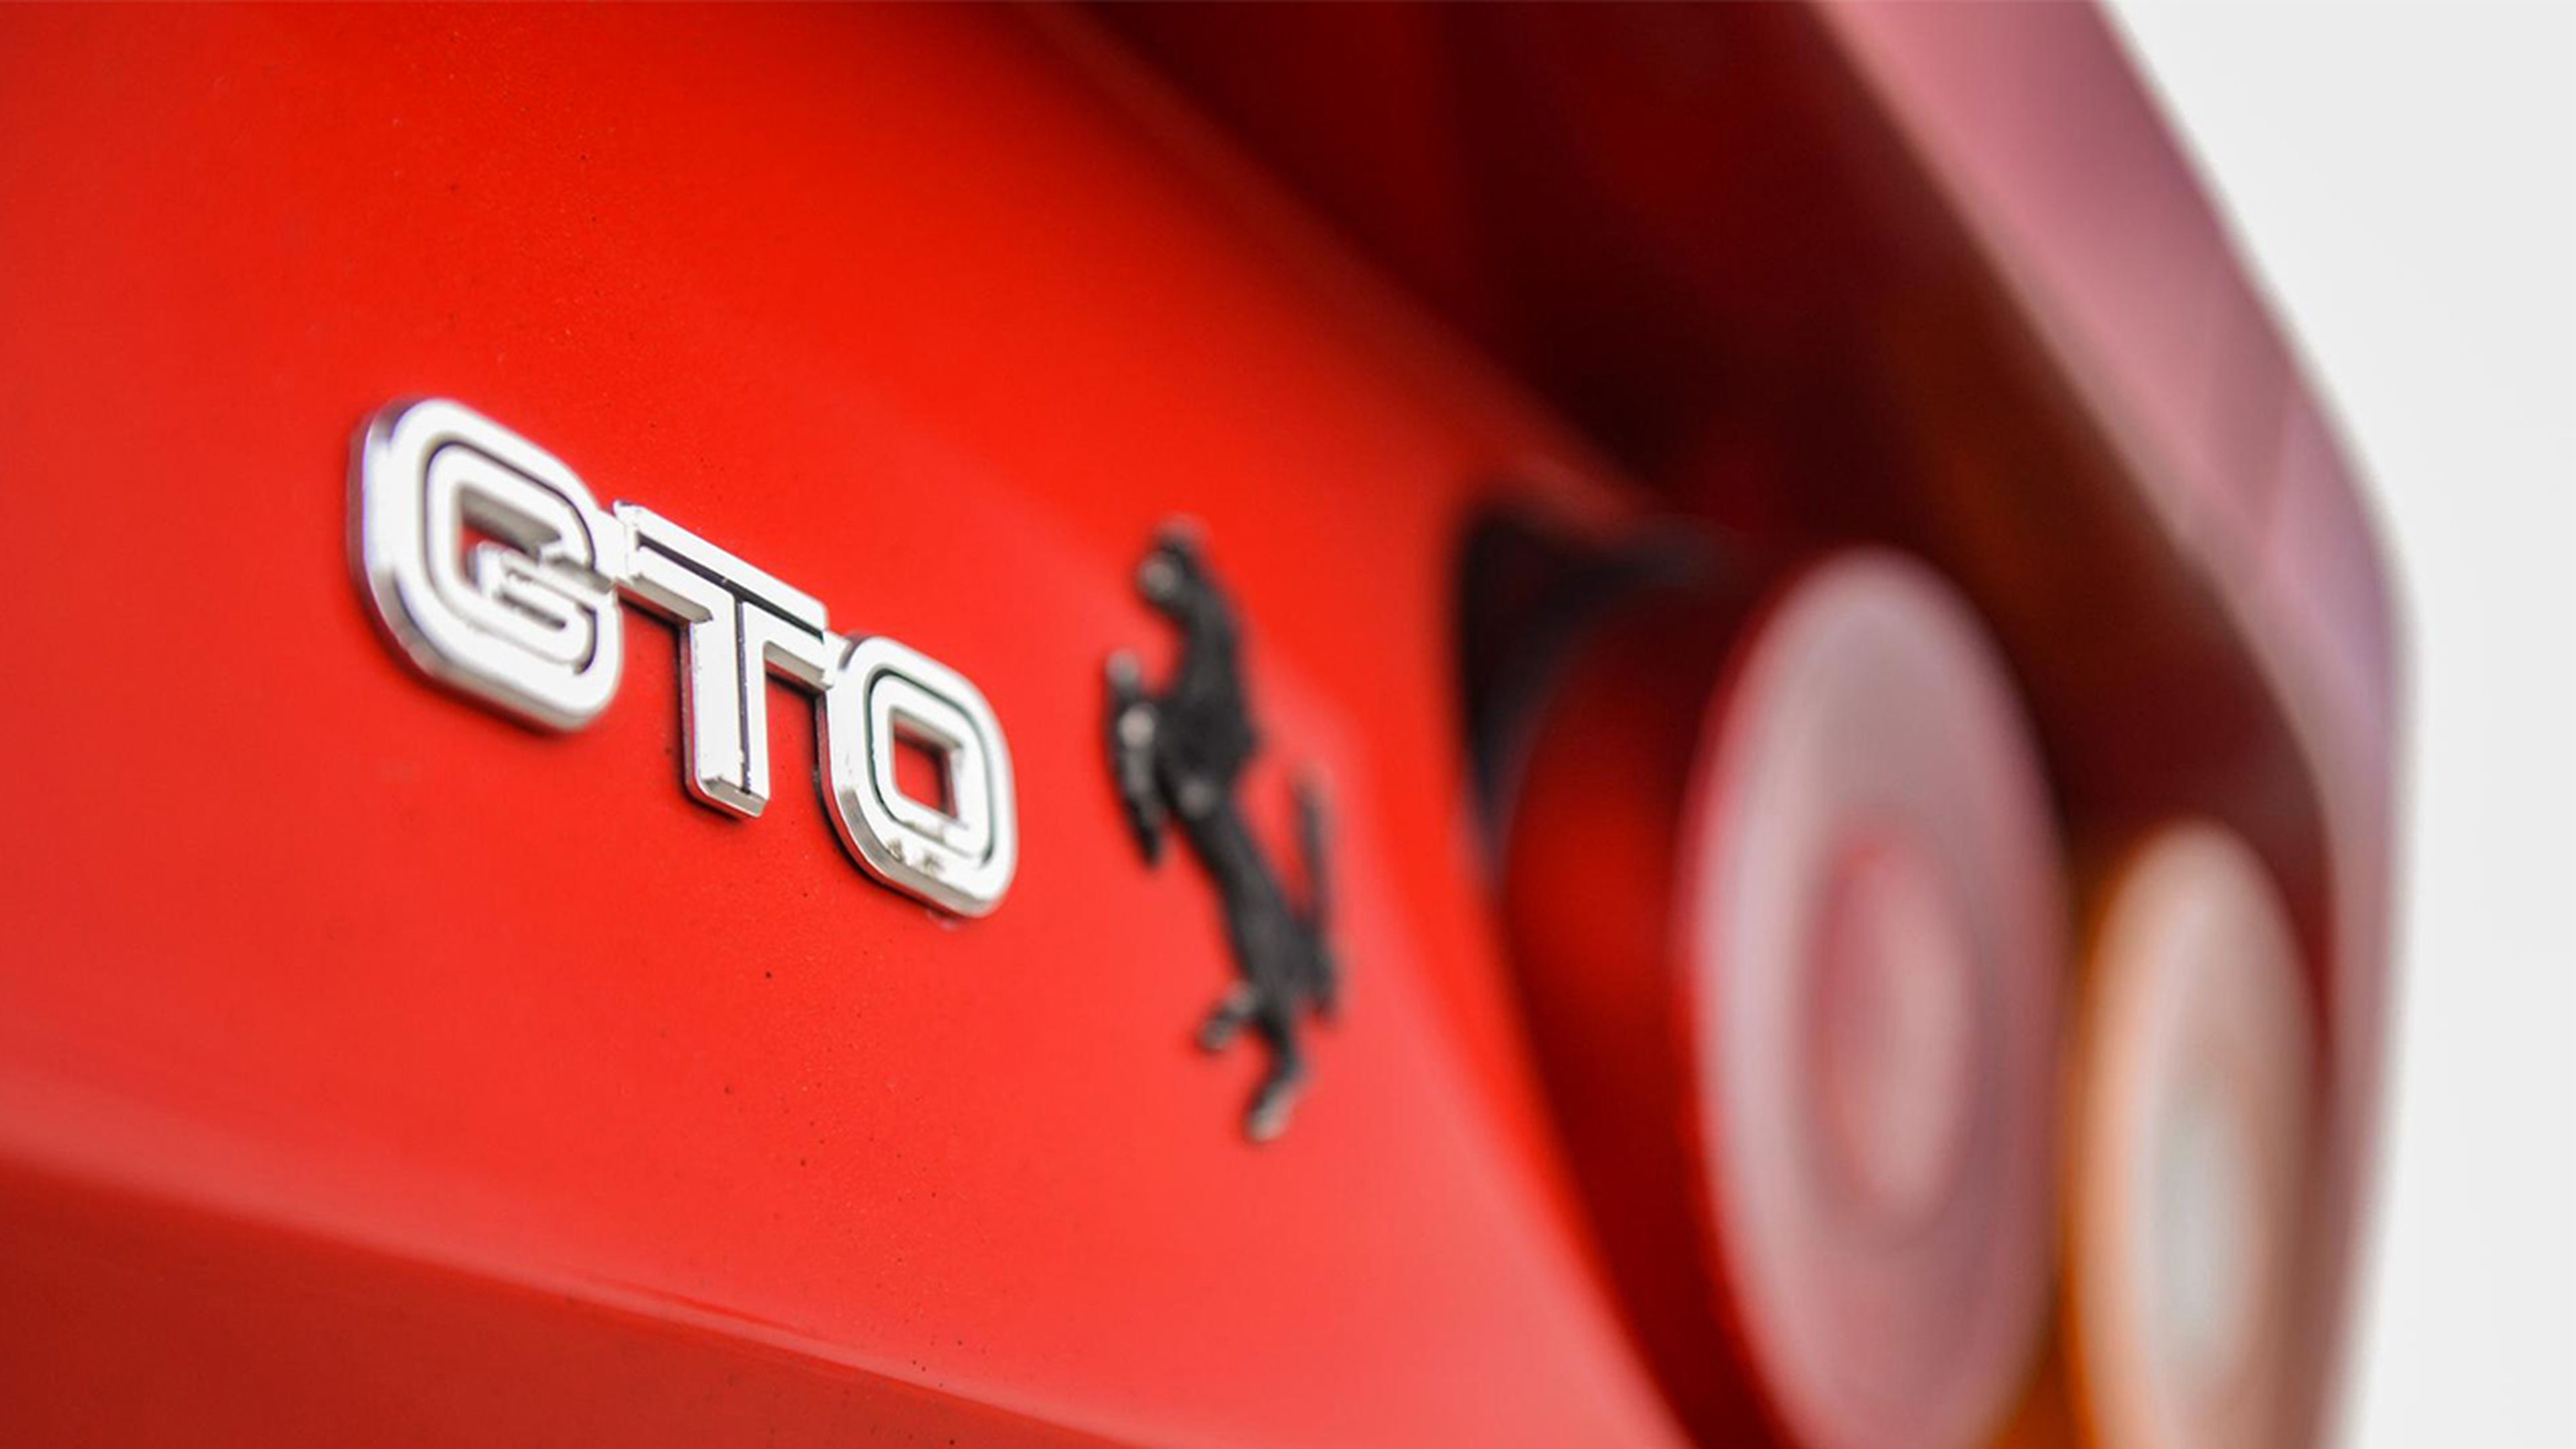 Ferrari GTO insignia